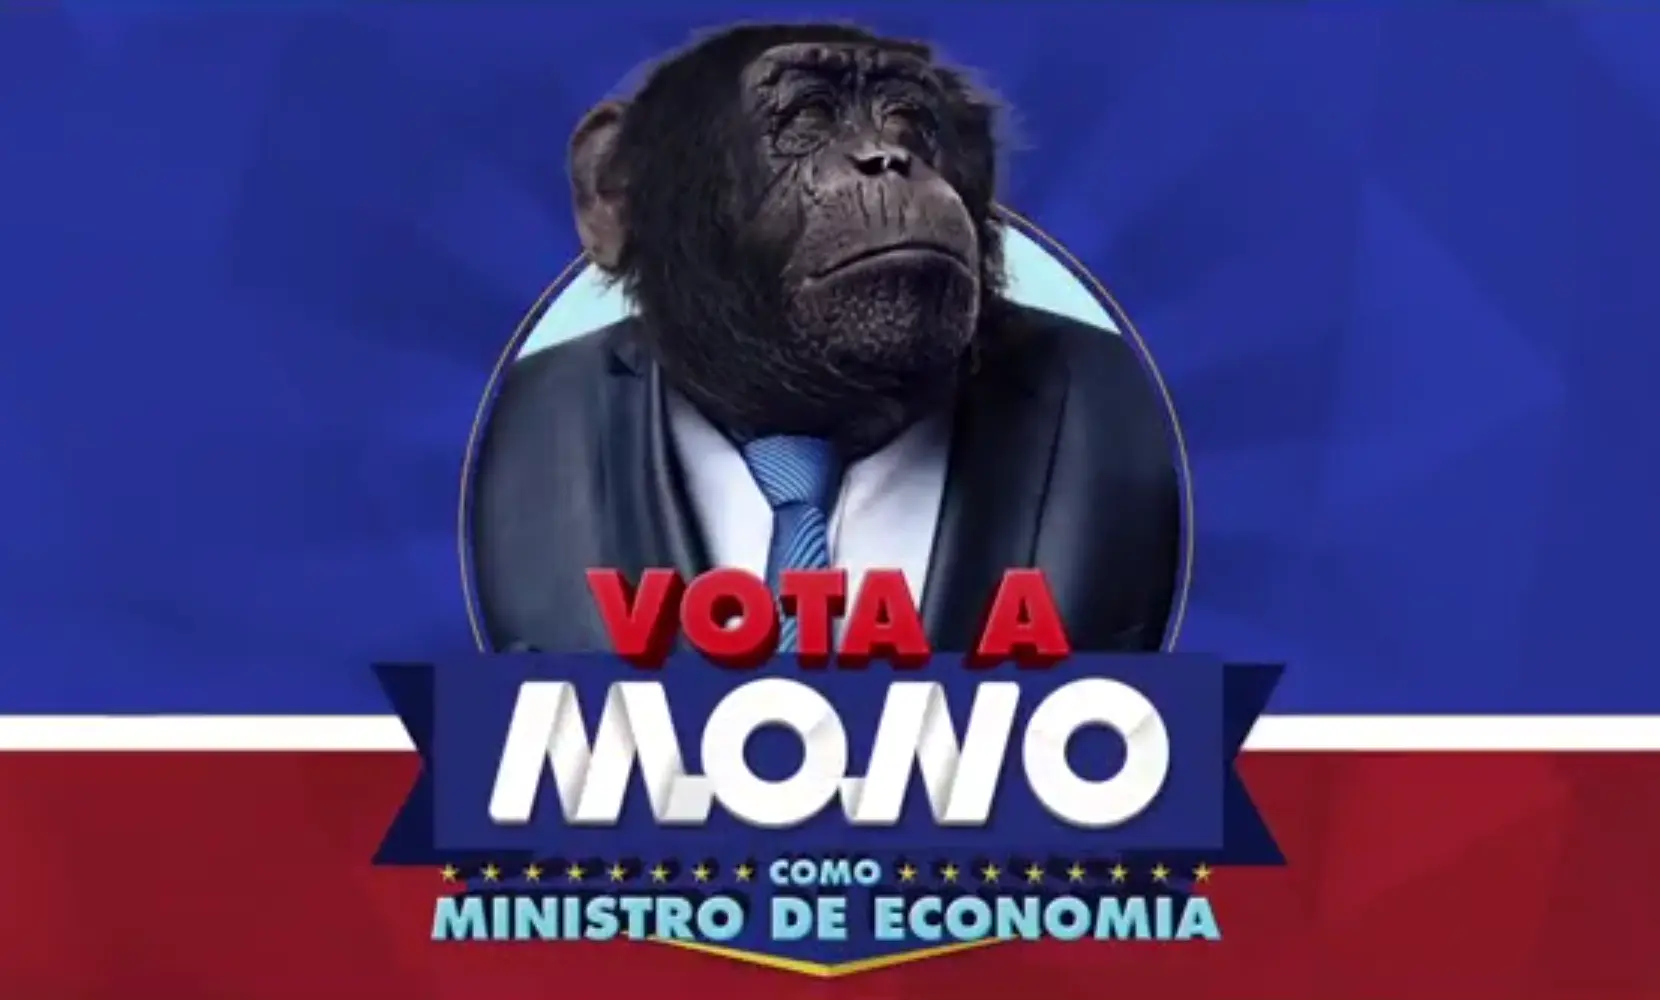 Vota a Mono como ministro de economía